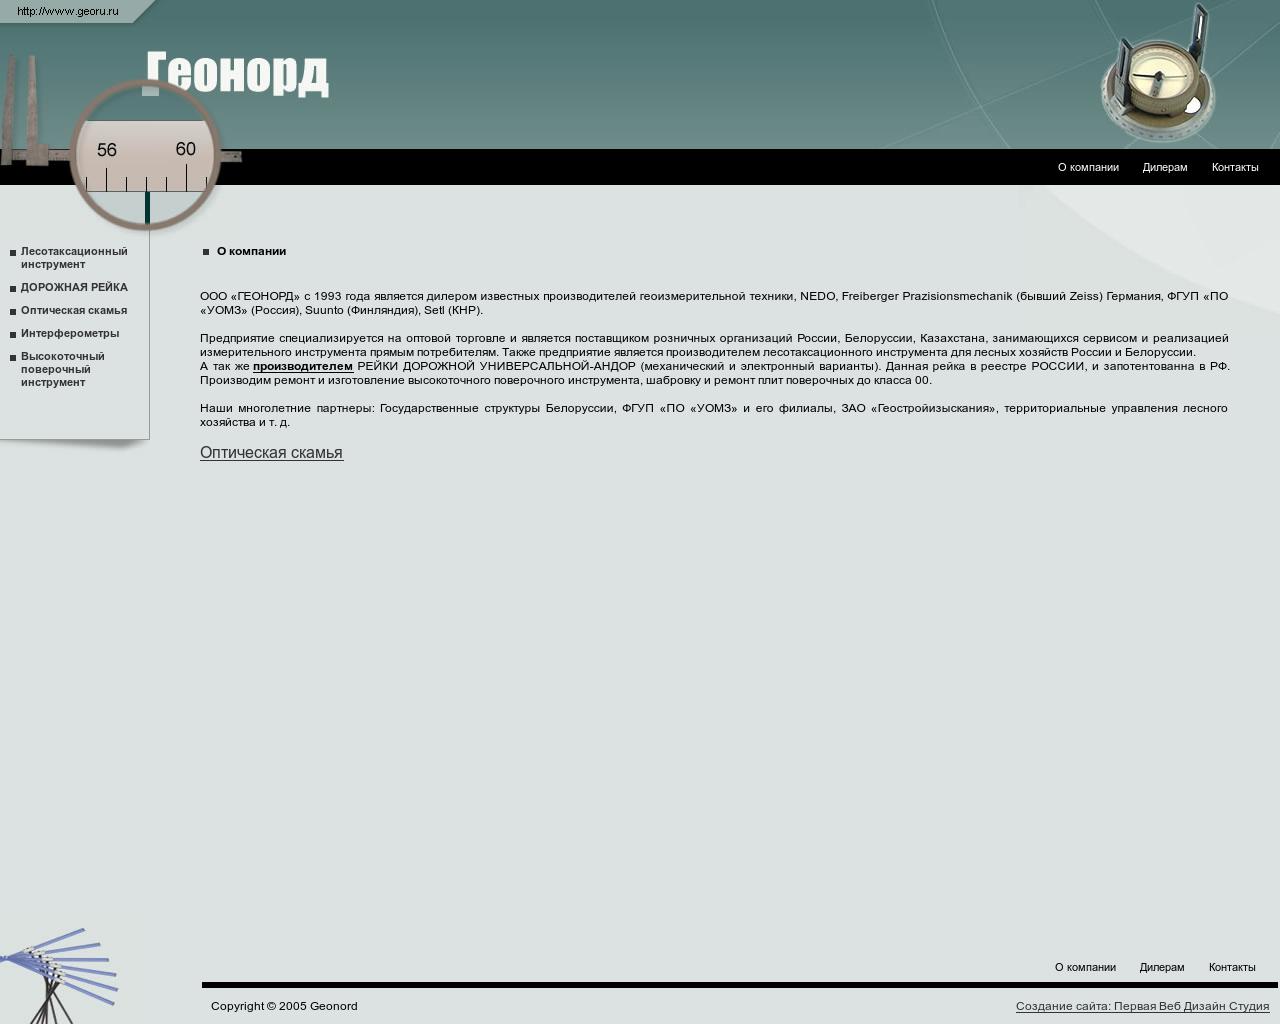 Изображение сайта georu.ru в разрешении 1280x1024